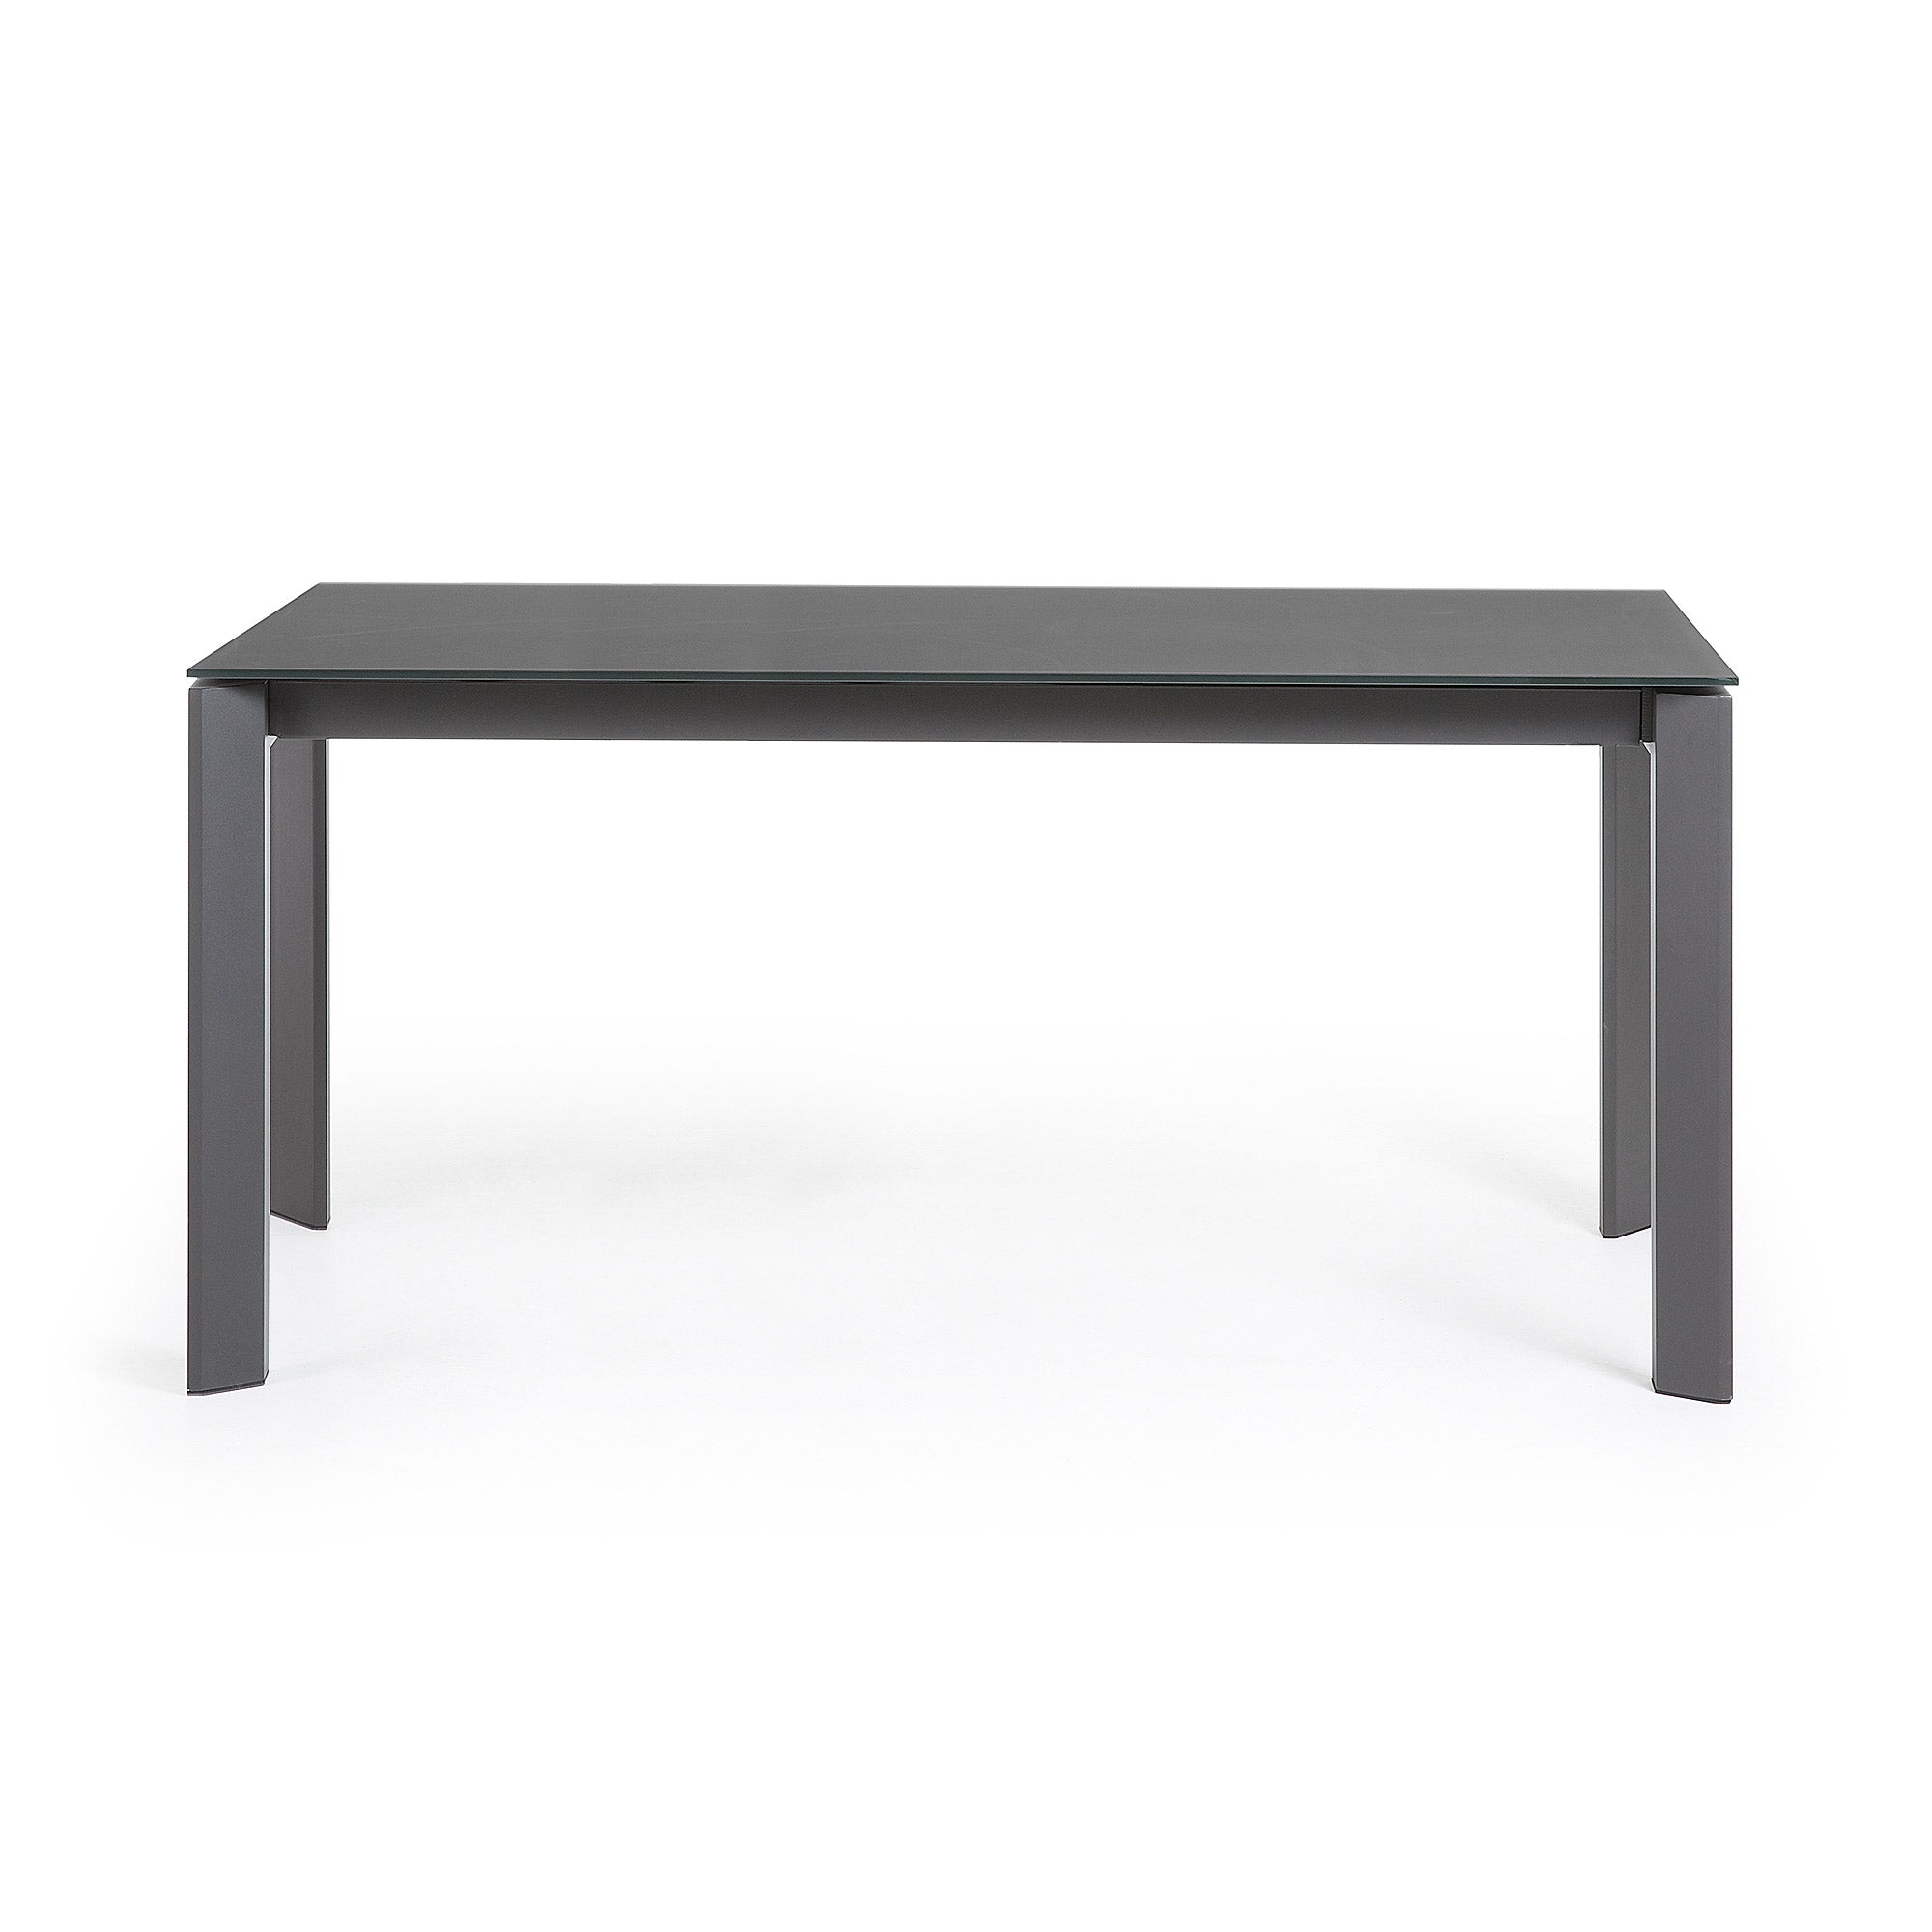 Axis kihúzható asztal szürke üvegből, sötétszürke acéllábakkal, 160 (220) cm, 160 (220) cm